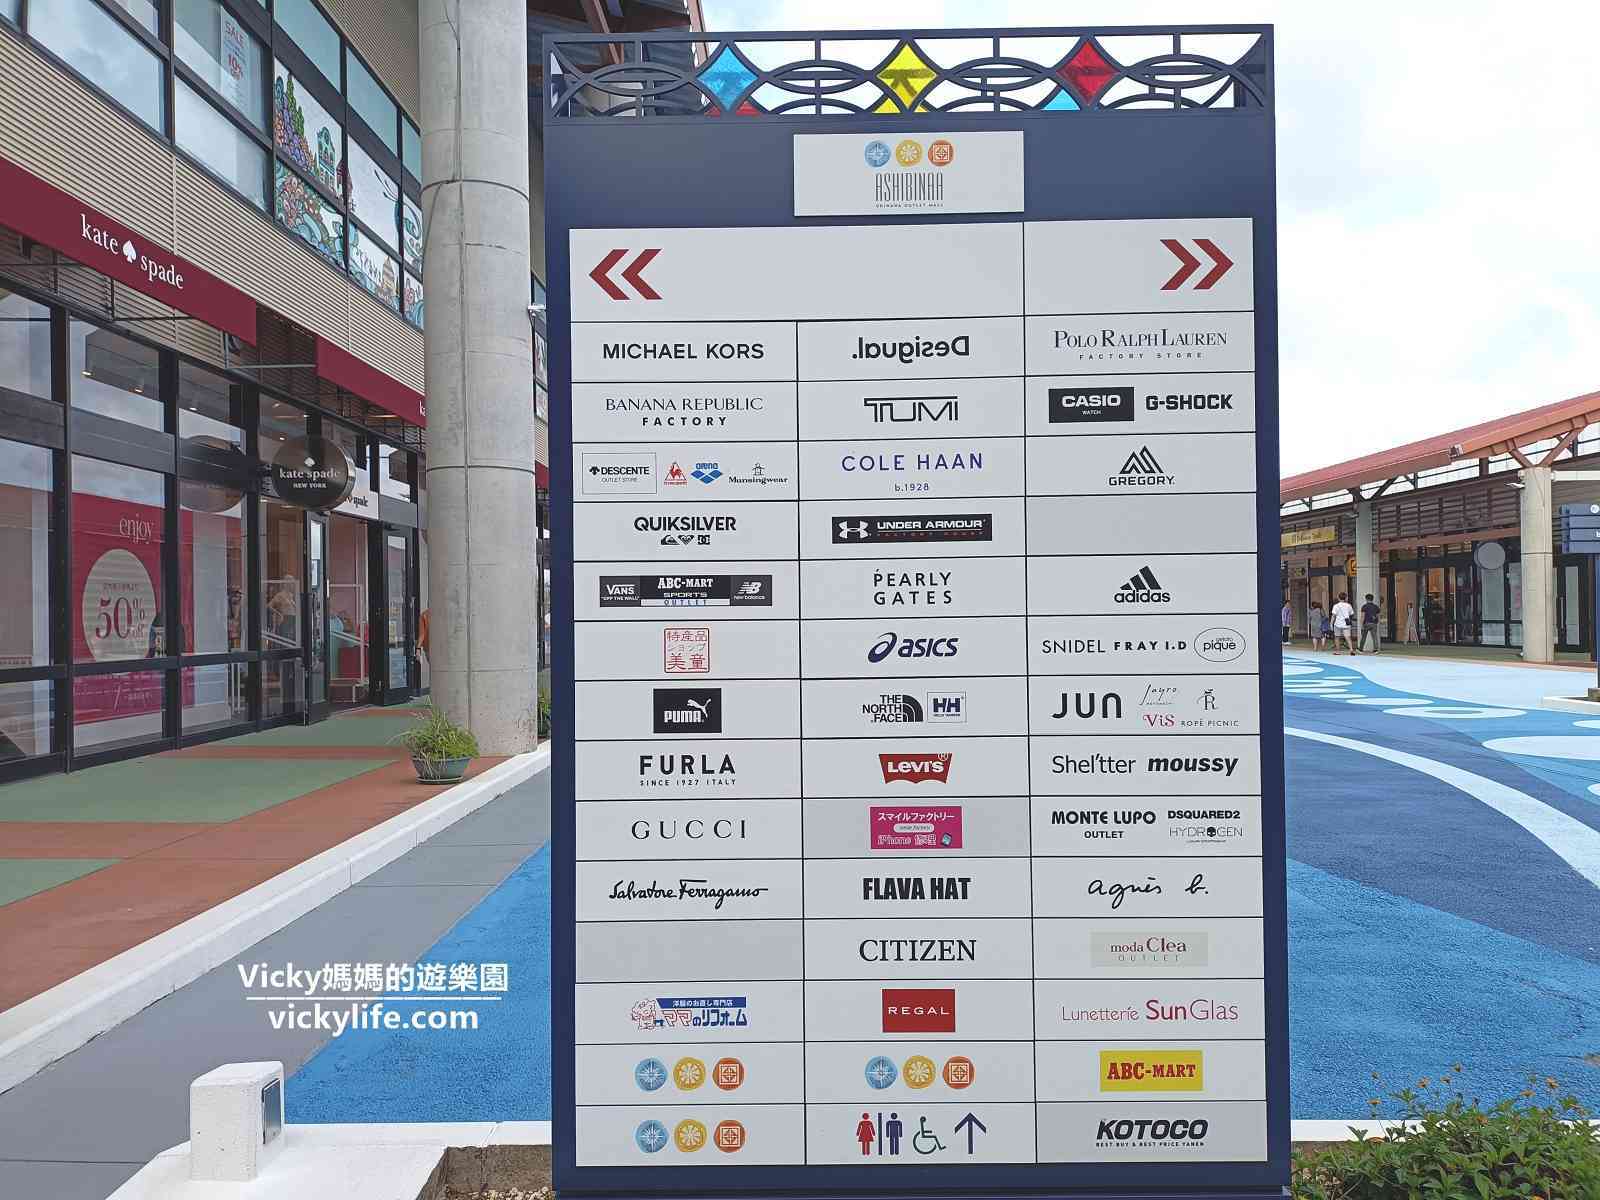 沖繩Outlet ASHIBINAA：100多個品牌慢慢逛的免稅天堂